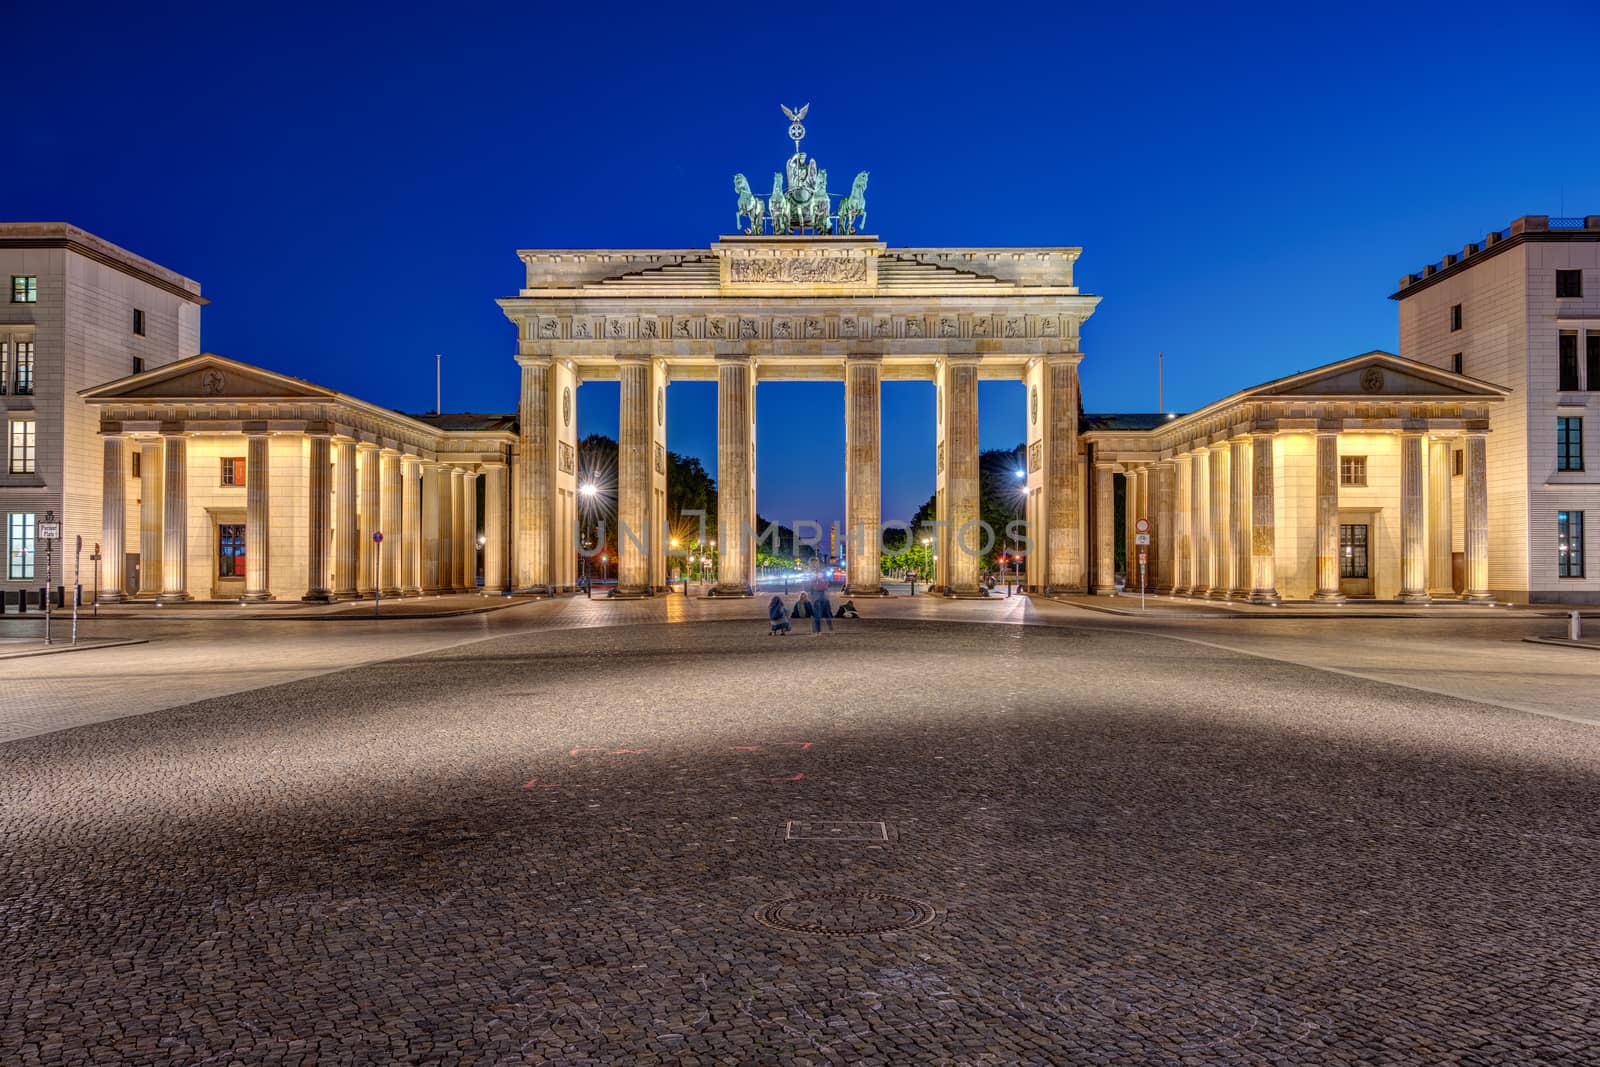 The famous illuminated Brandenburg Gate by elxeneize